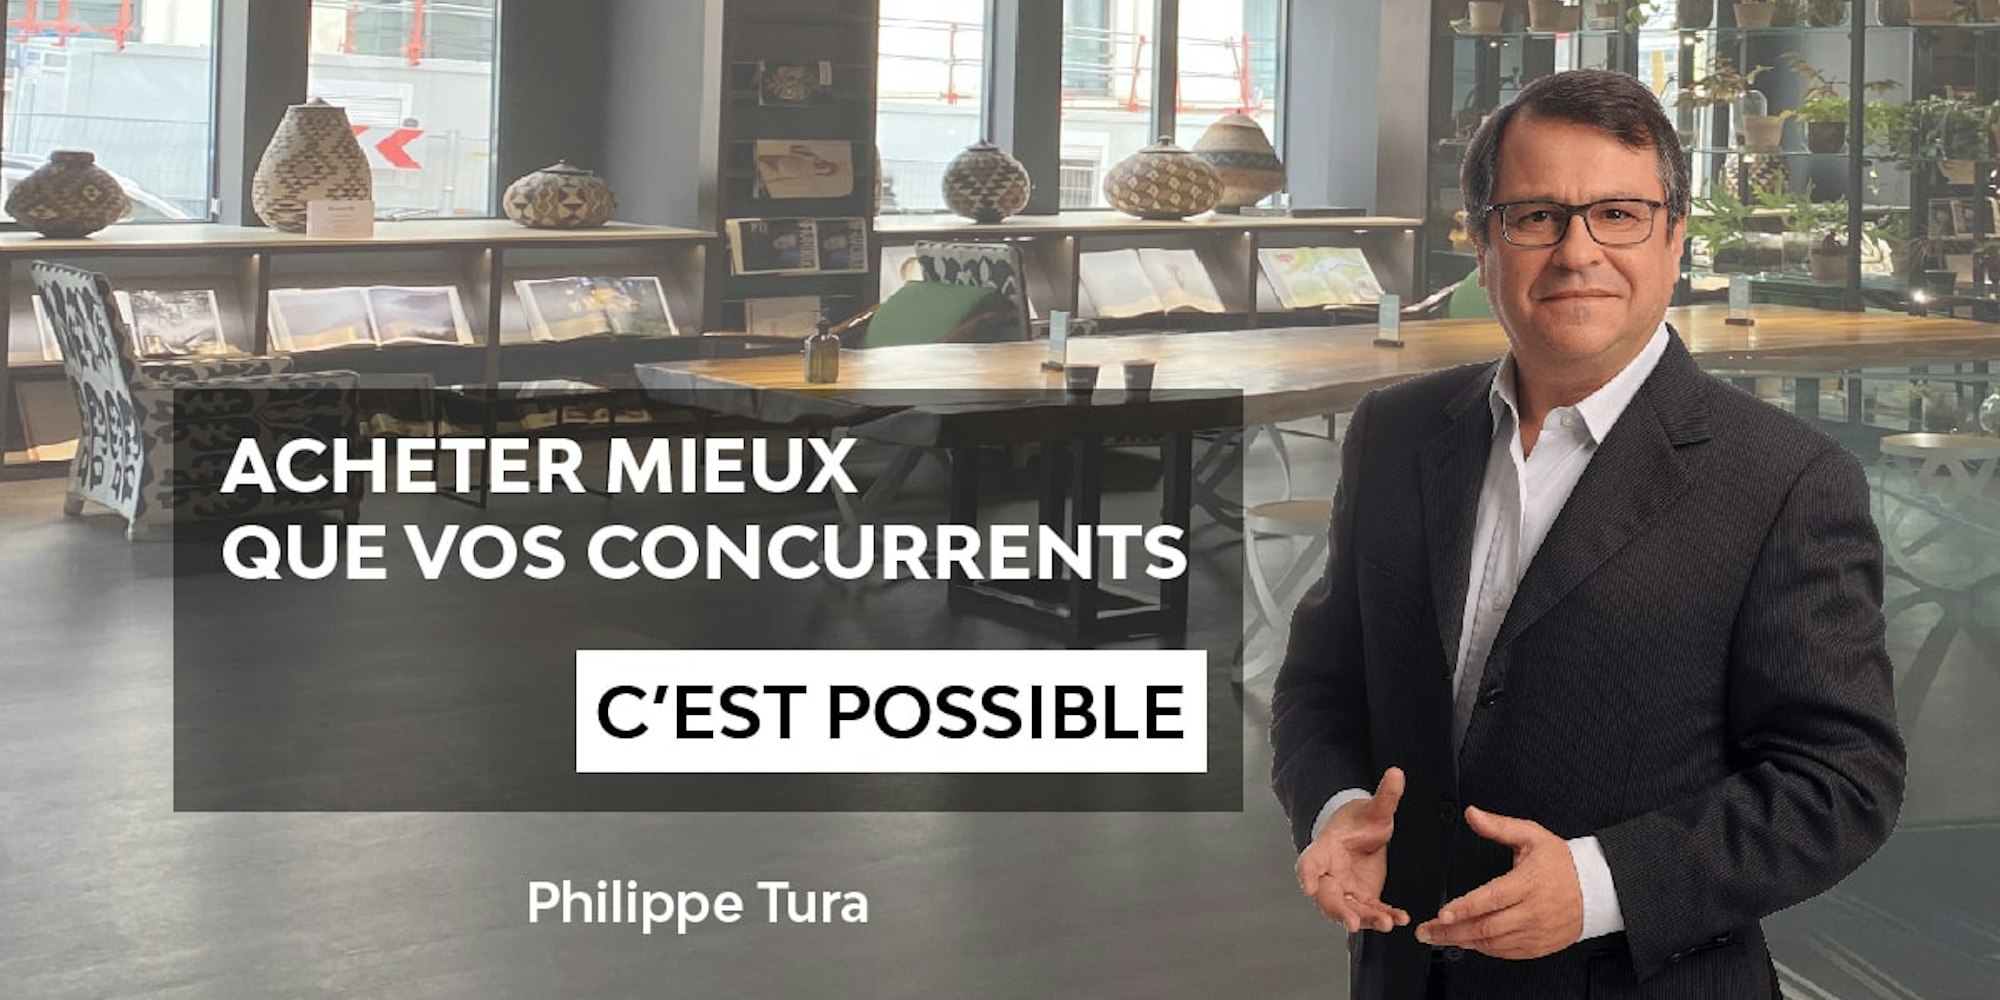 Acheter mieux que vos concurrents c'est Acheter mieux que vos concurrents c'est possible par Philippe Turapossible Philippe Tura